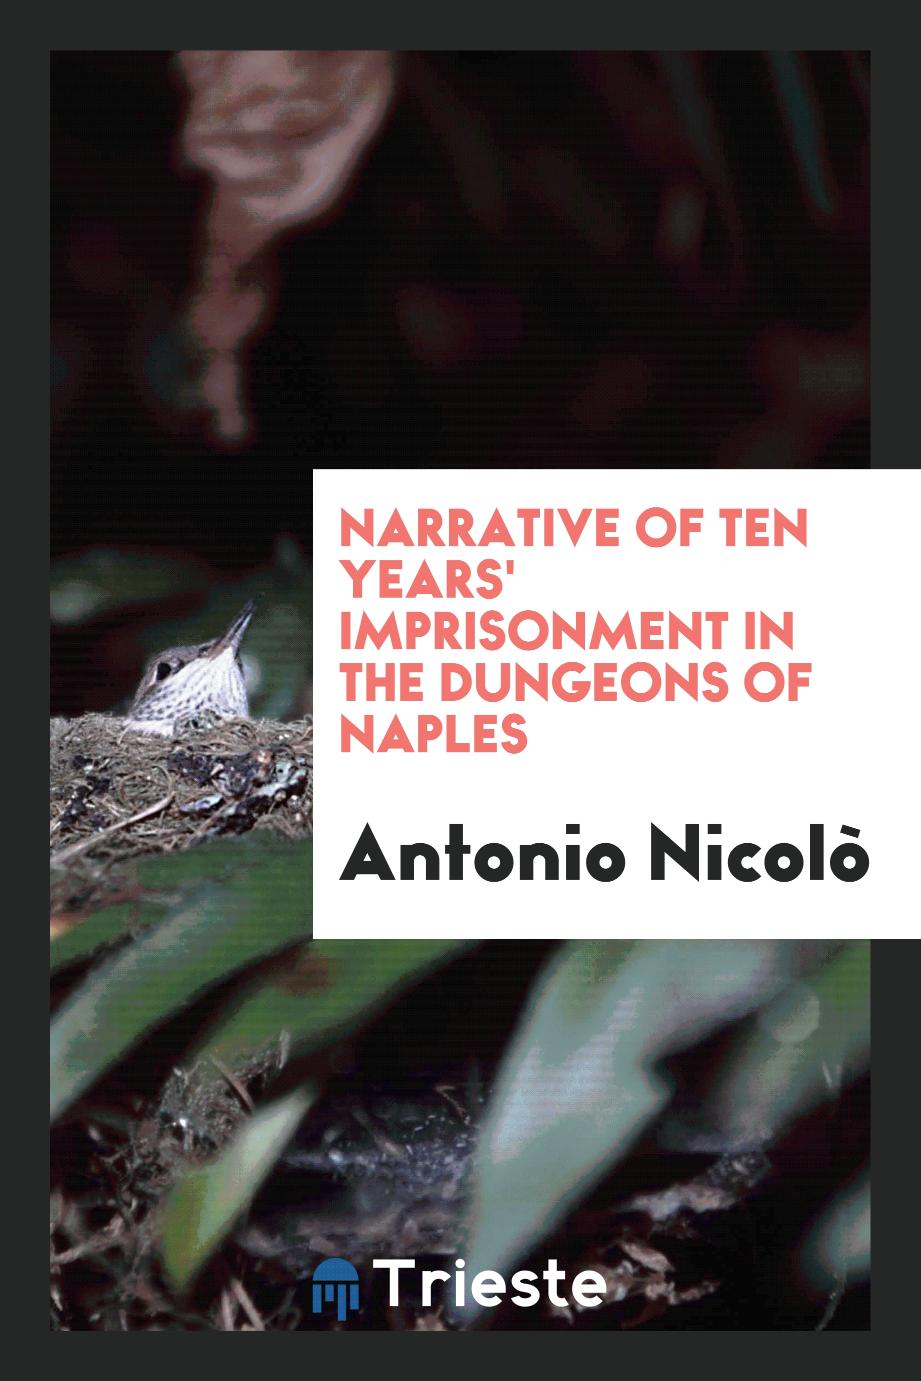 Antonio Nicolò - Narrative of Ten Years' Imprisonment in the Dungeons of Naples